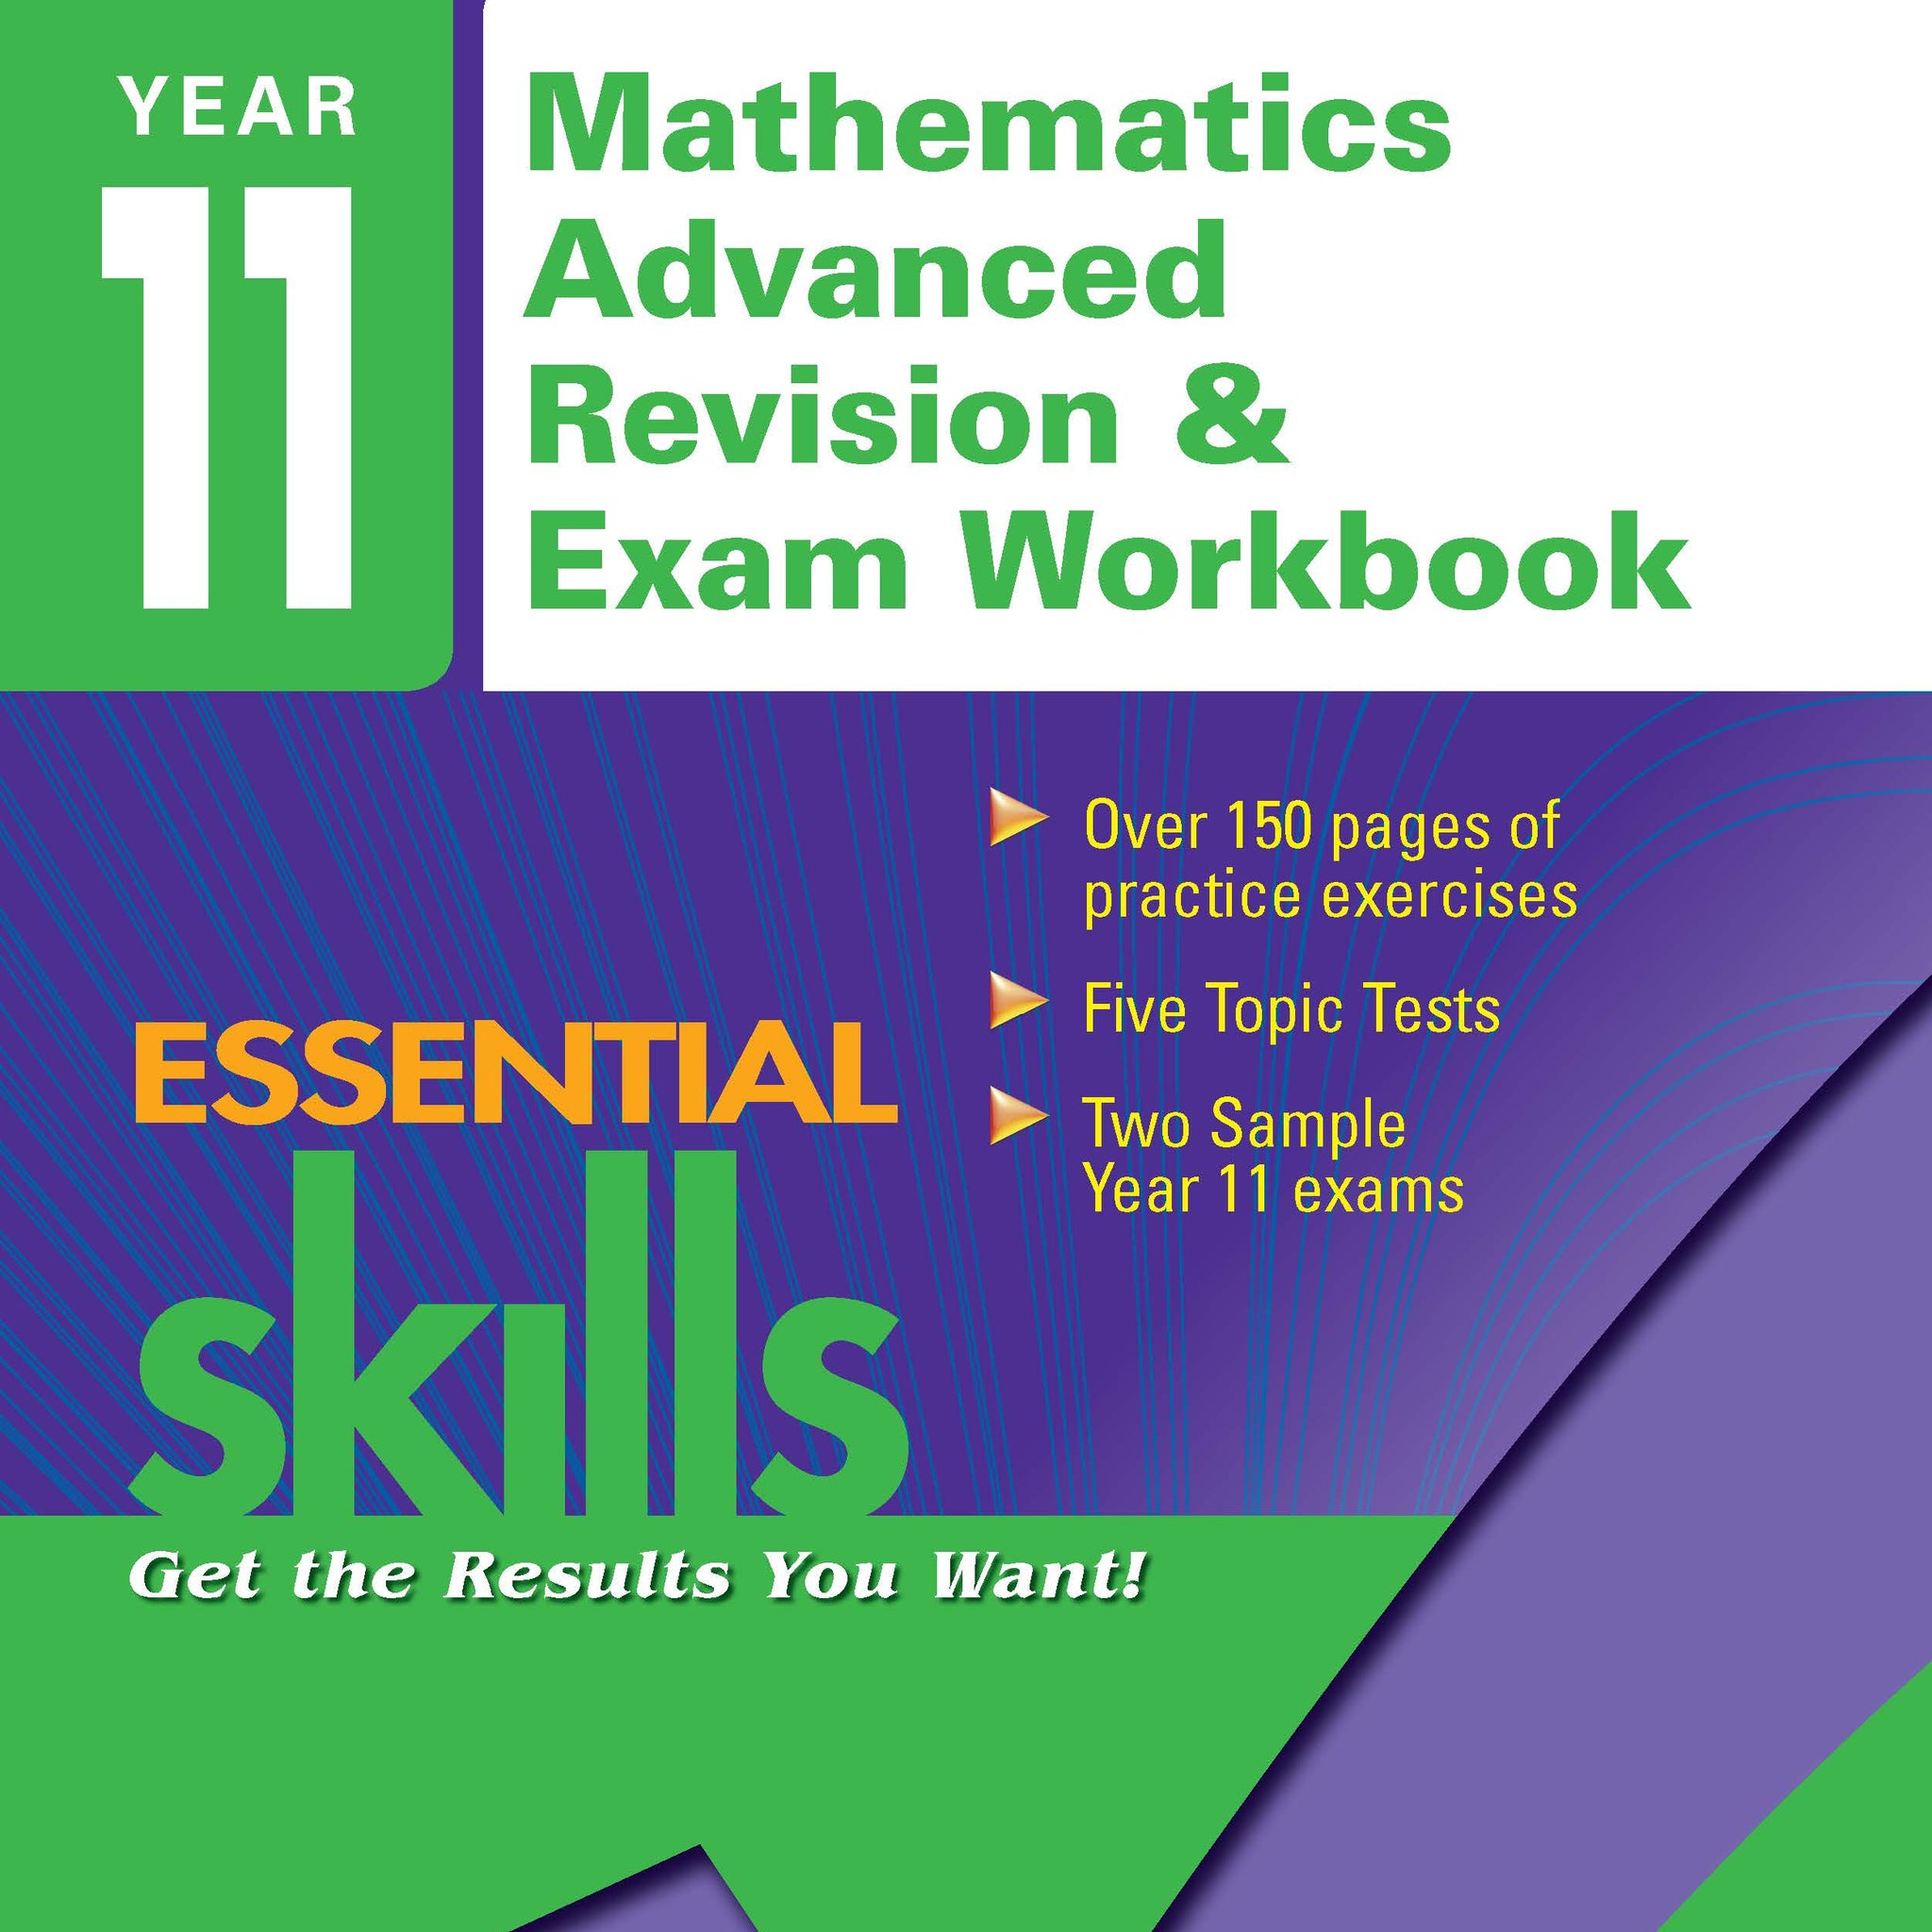 Excel Essential Skills: Year 11 Mathematics Advanced Revision & Exam Workbook